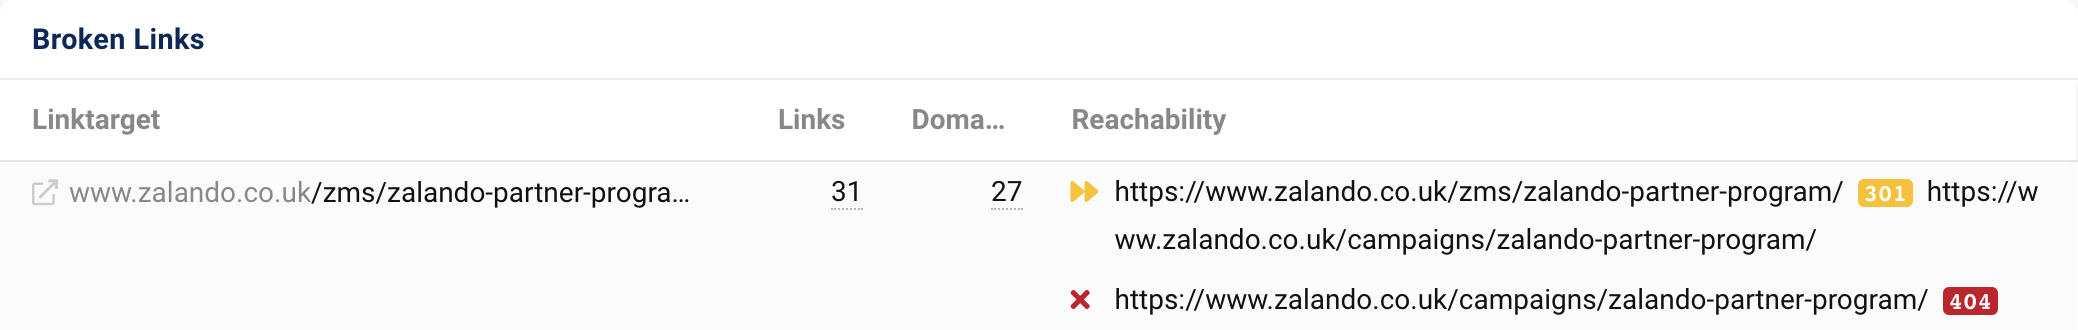 Link-ul țintă zalando.co.uk/zms/zalando-partner-program/ primește 31 de link-uri din 27 de domenii. După o redirecționare 301, URL-ul emite un cod de stare 404.